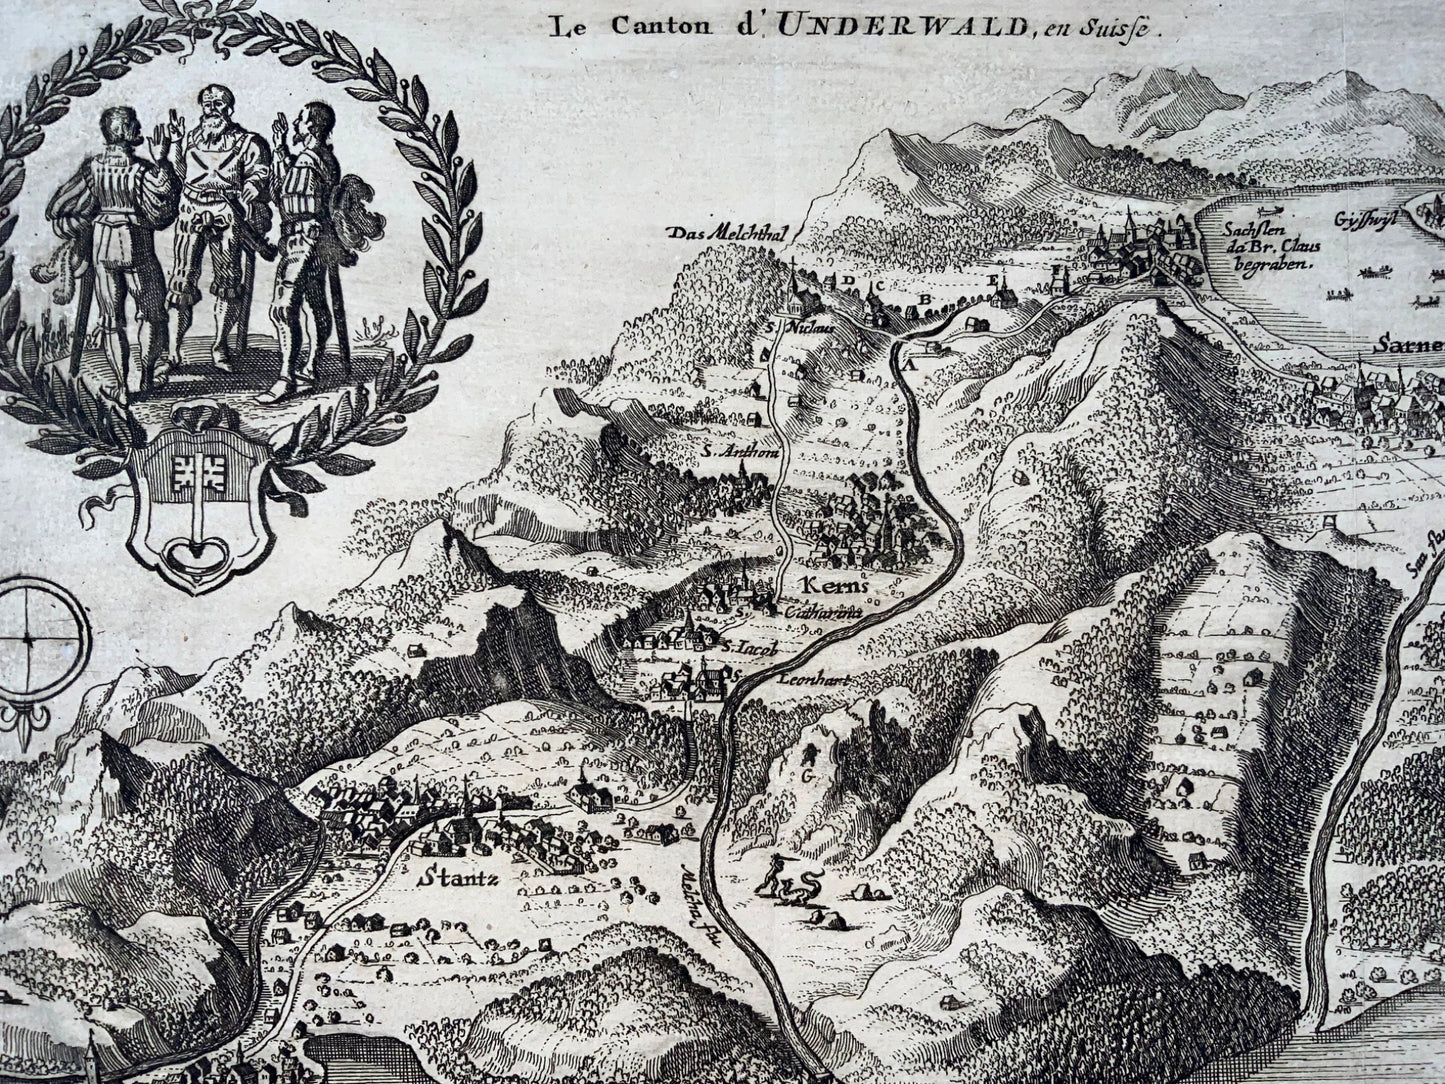 1723 Unterwalden, Carte à vol d'oiseau, Sarnen, Stans, Kerns, Alpnach, Suisse